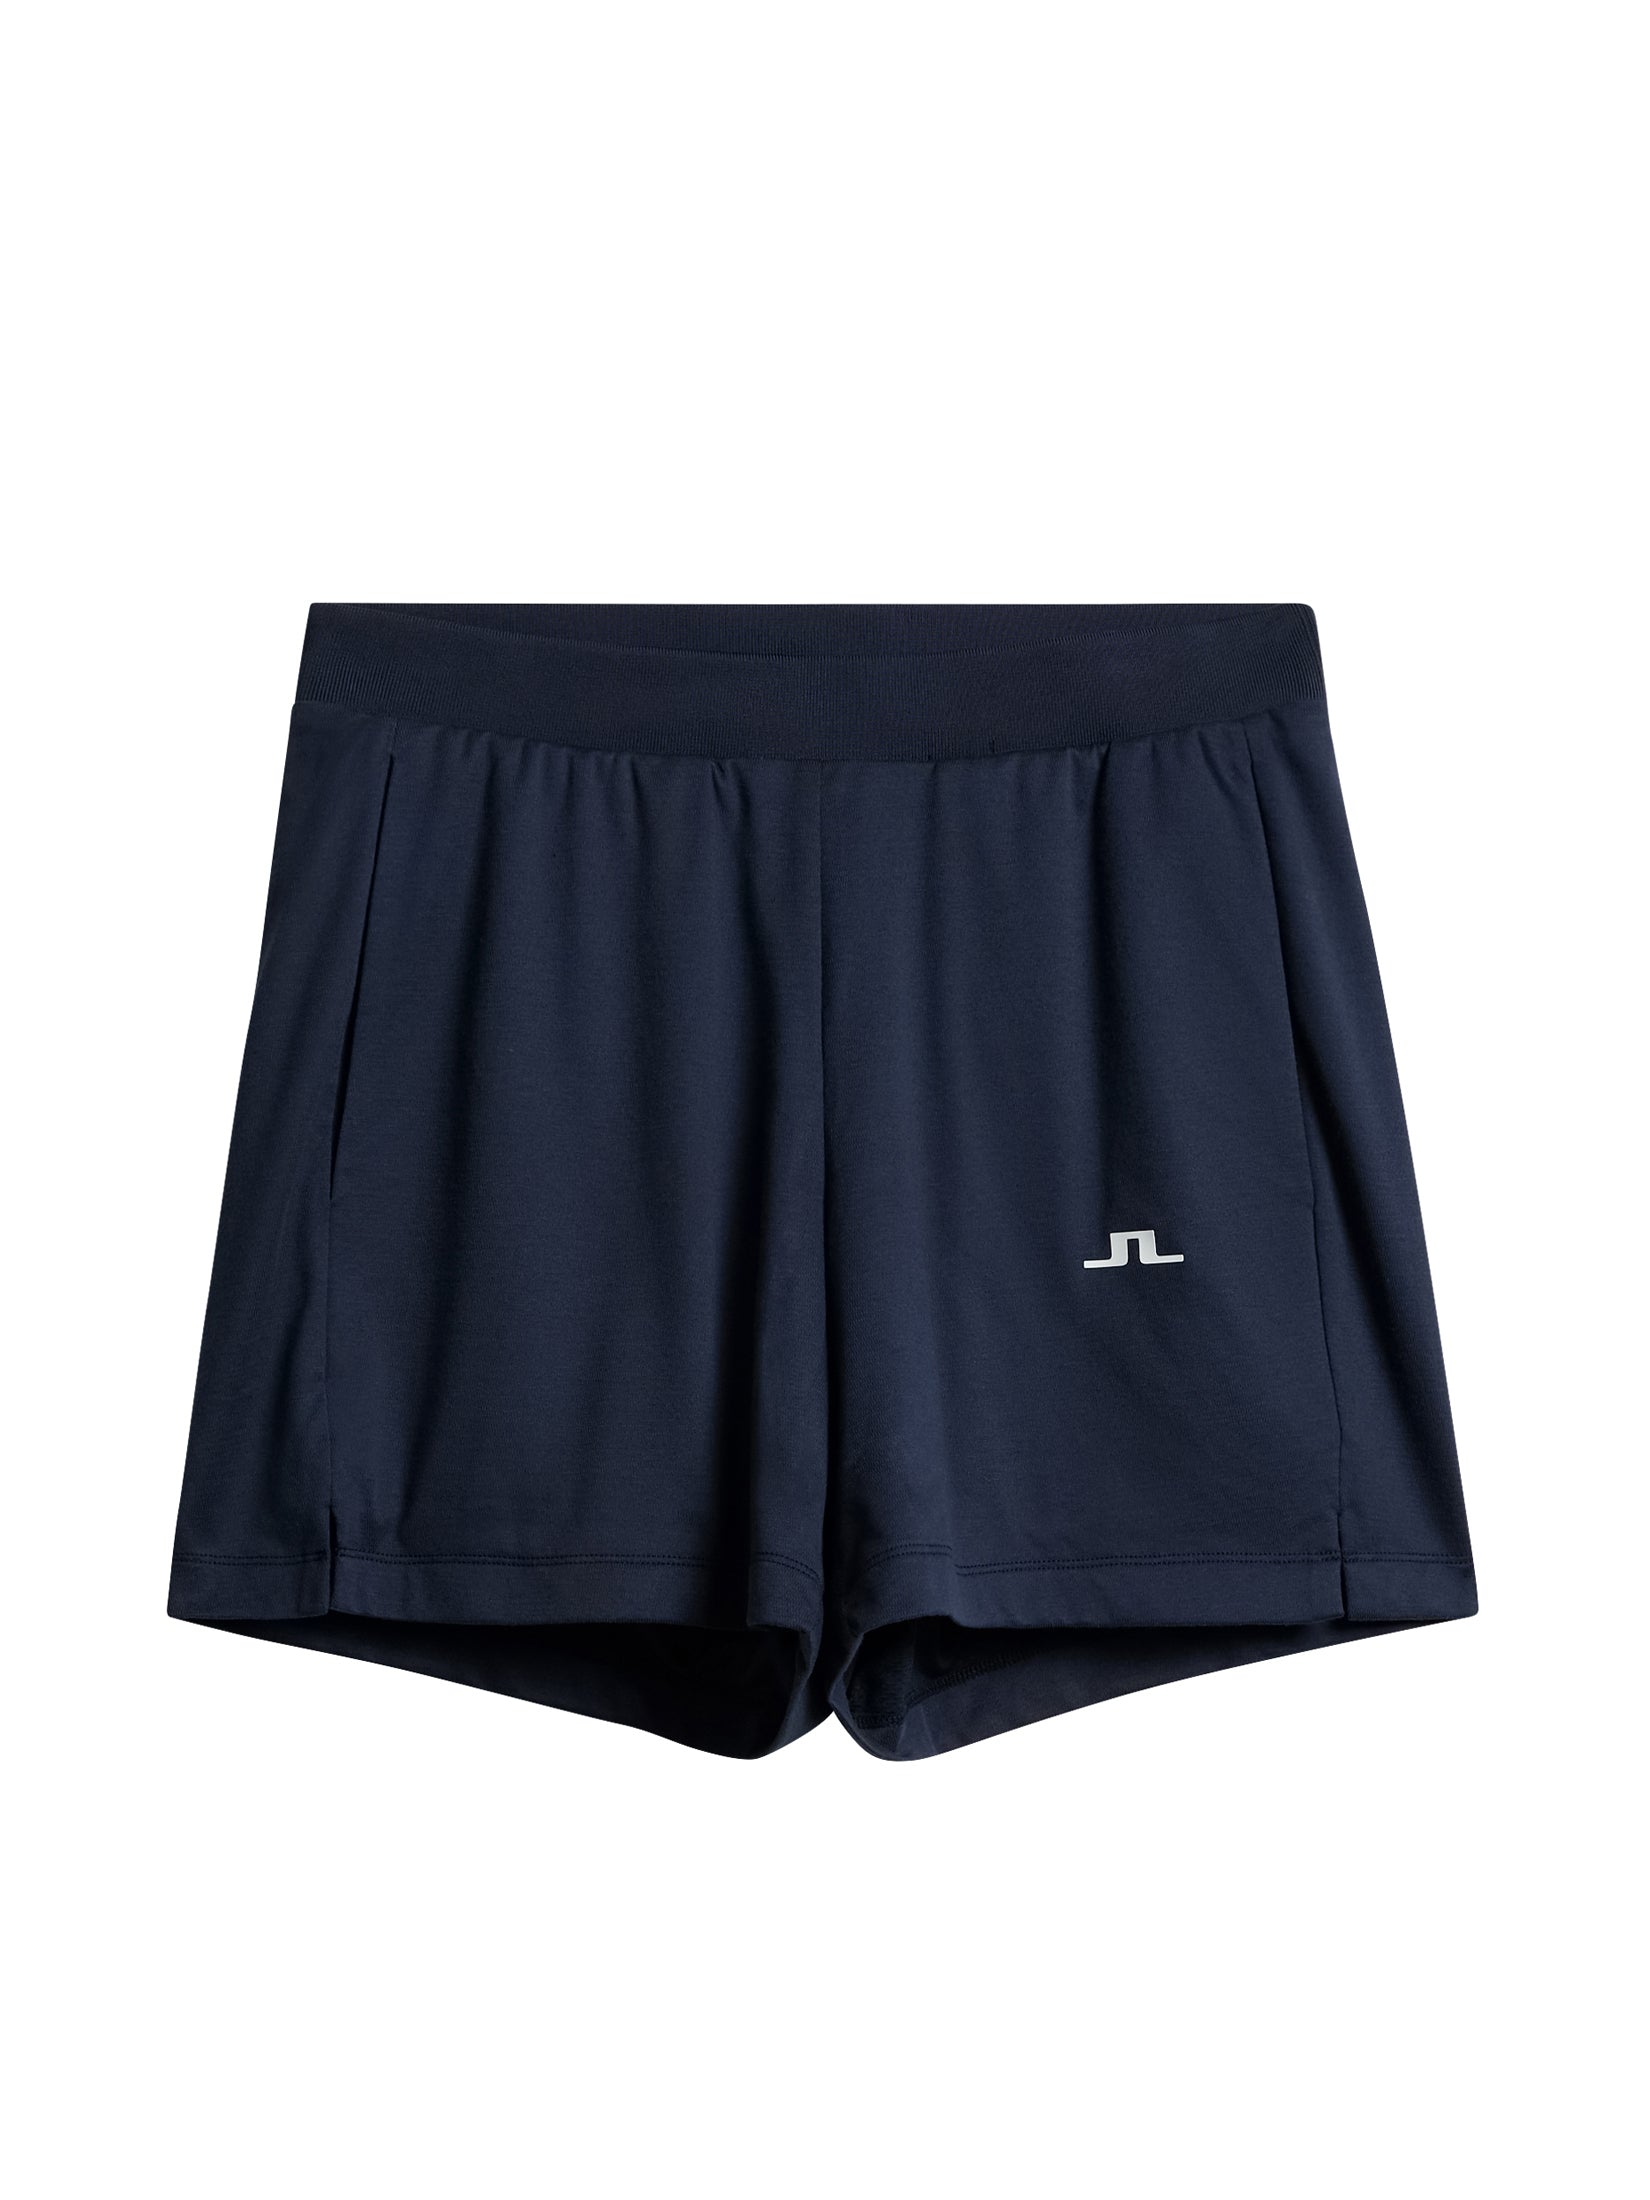 Vice Shorts / JL Navy – J.Lindeberg